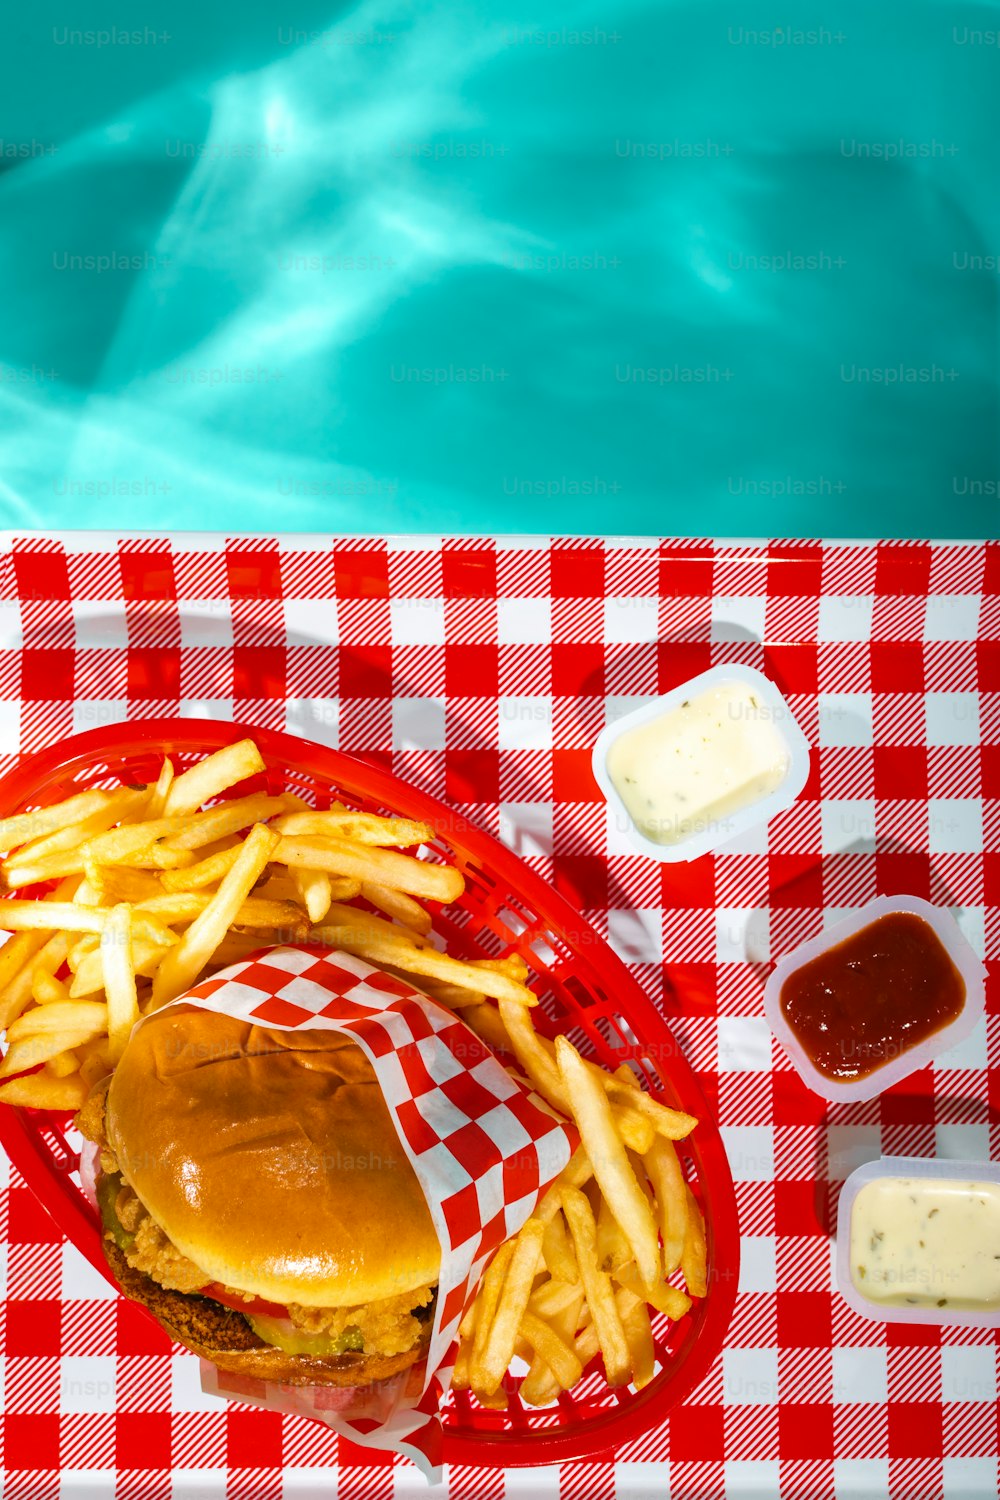 赤と白の市松模様のテーブルクロスにハンバーガーとフライドポテト